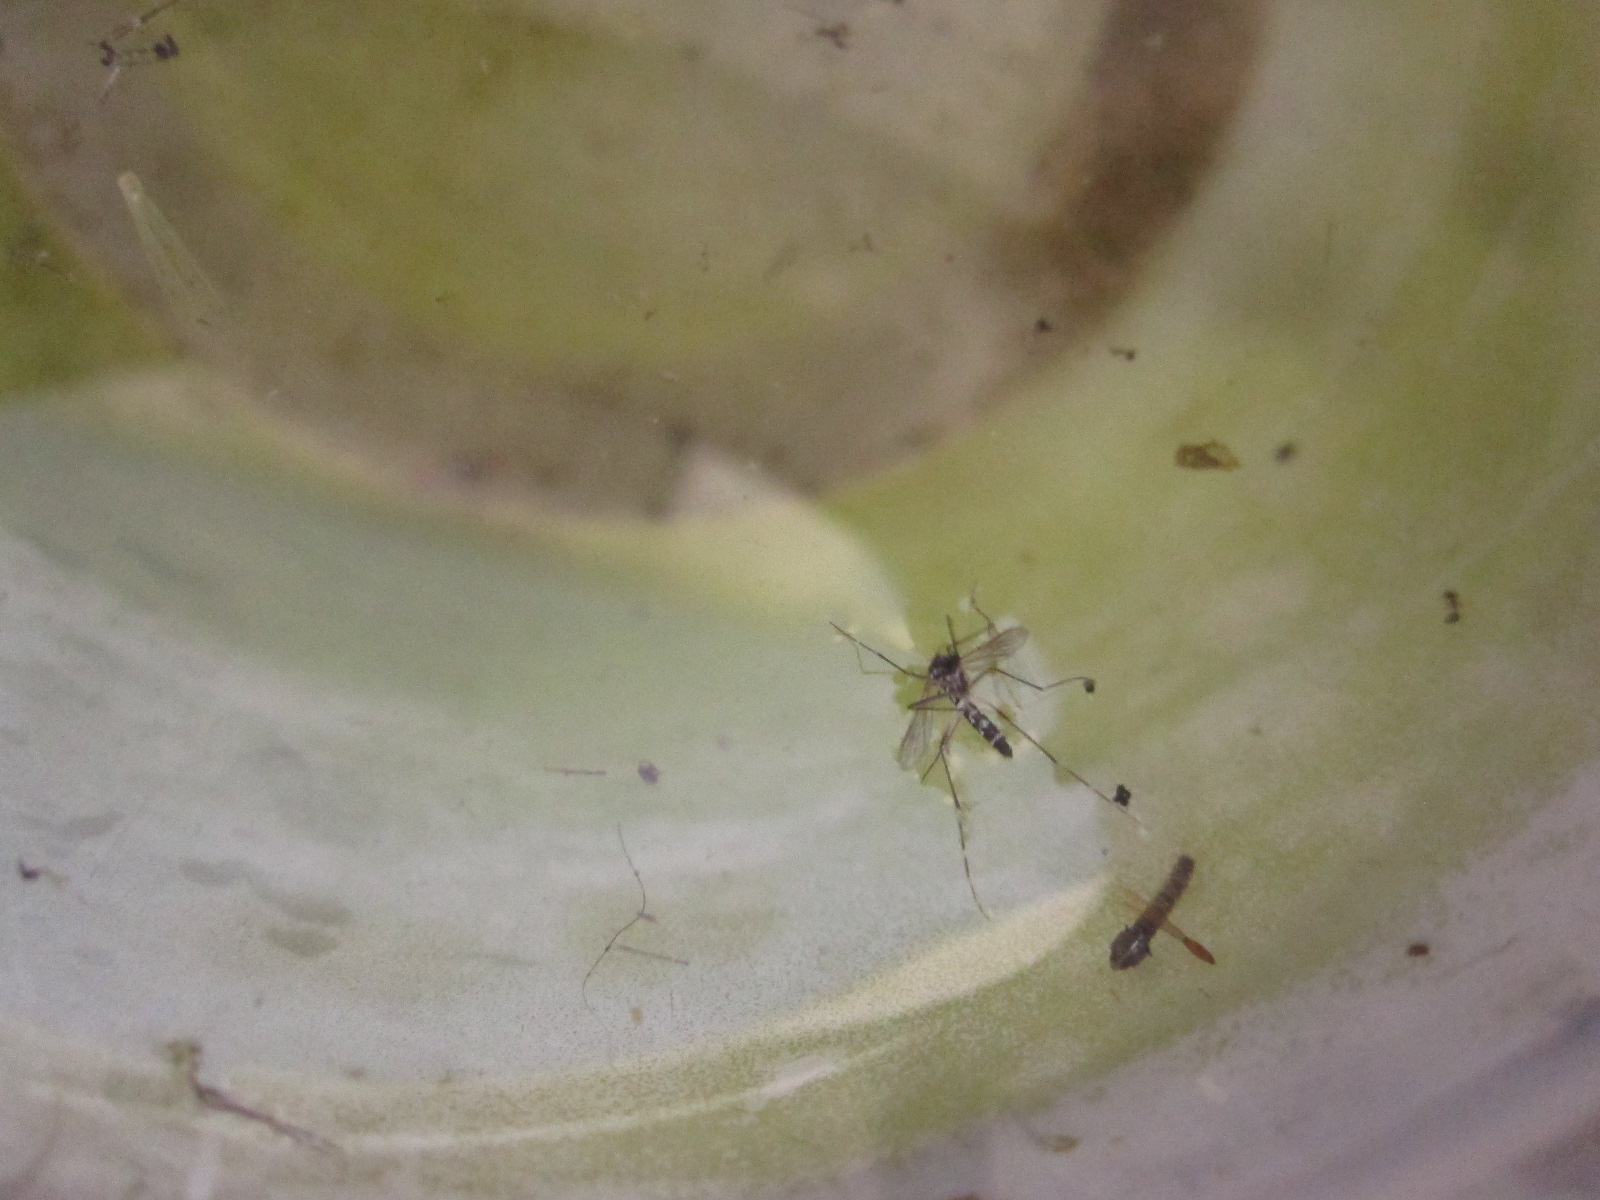 容器内の雨水に浮かぶ死んだ蚊の成虫と蛹（サナギ）